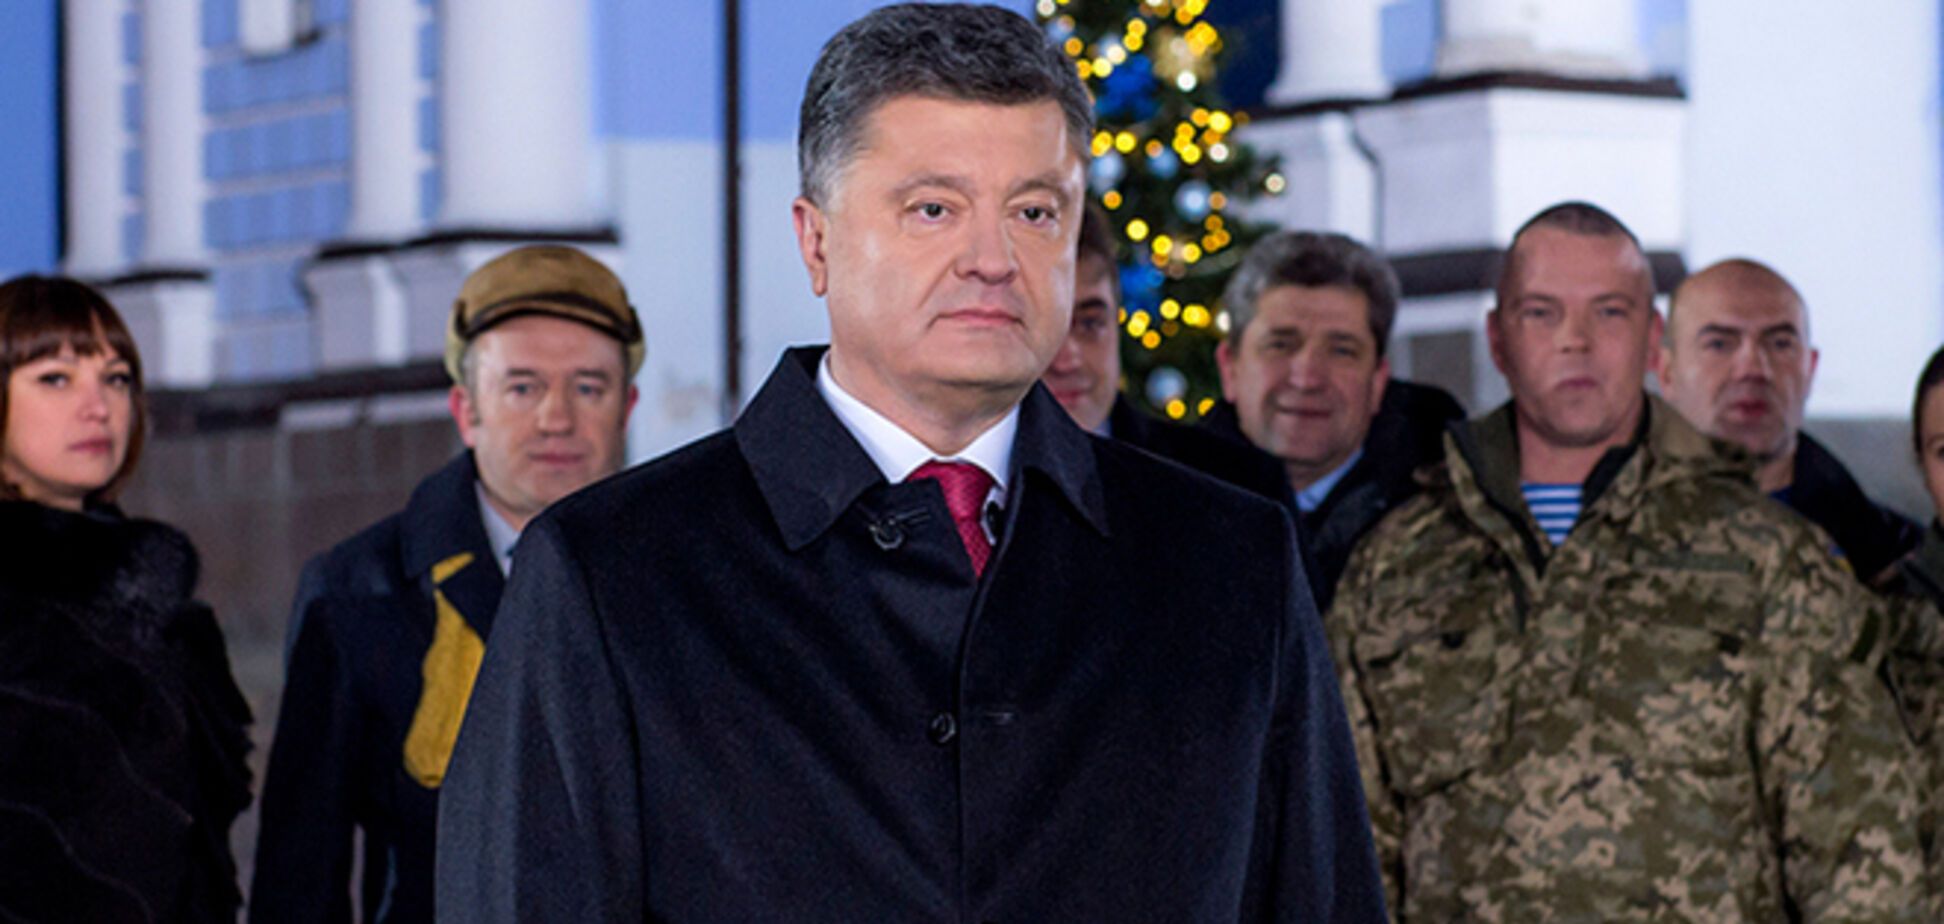 'Єдина країна' — 'Единая страна' — 'Бир дэвлет': Порошенко поздравил Украину с Новым годом